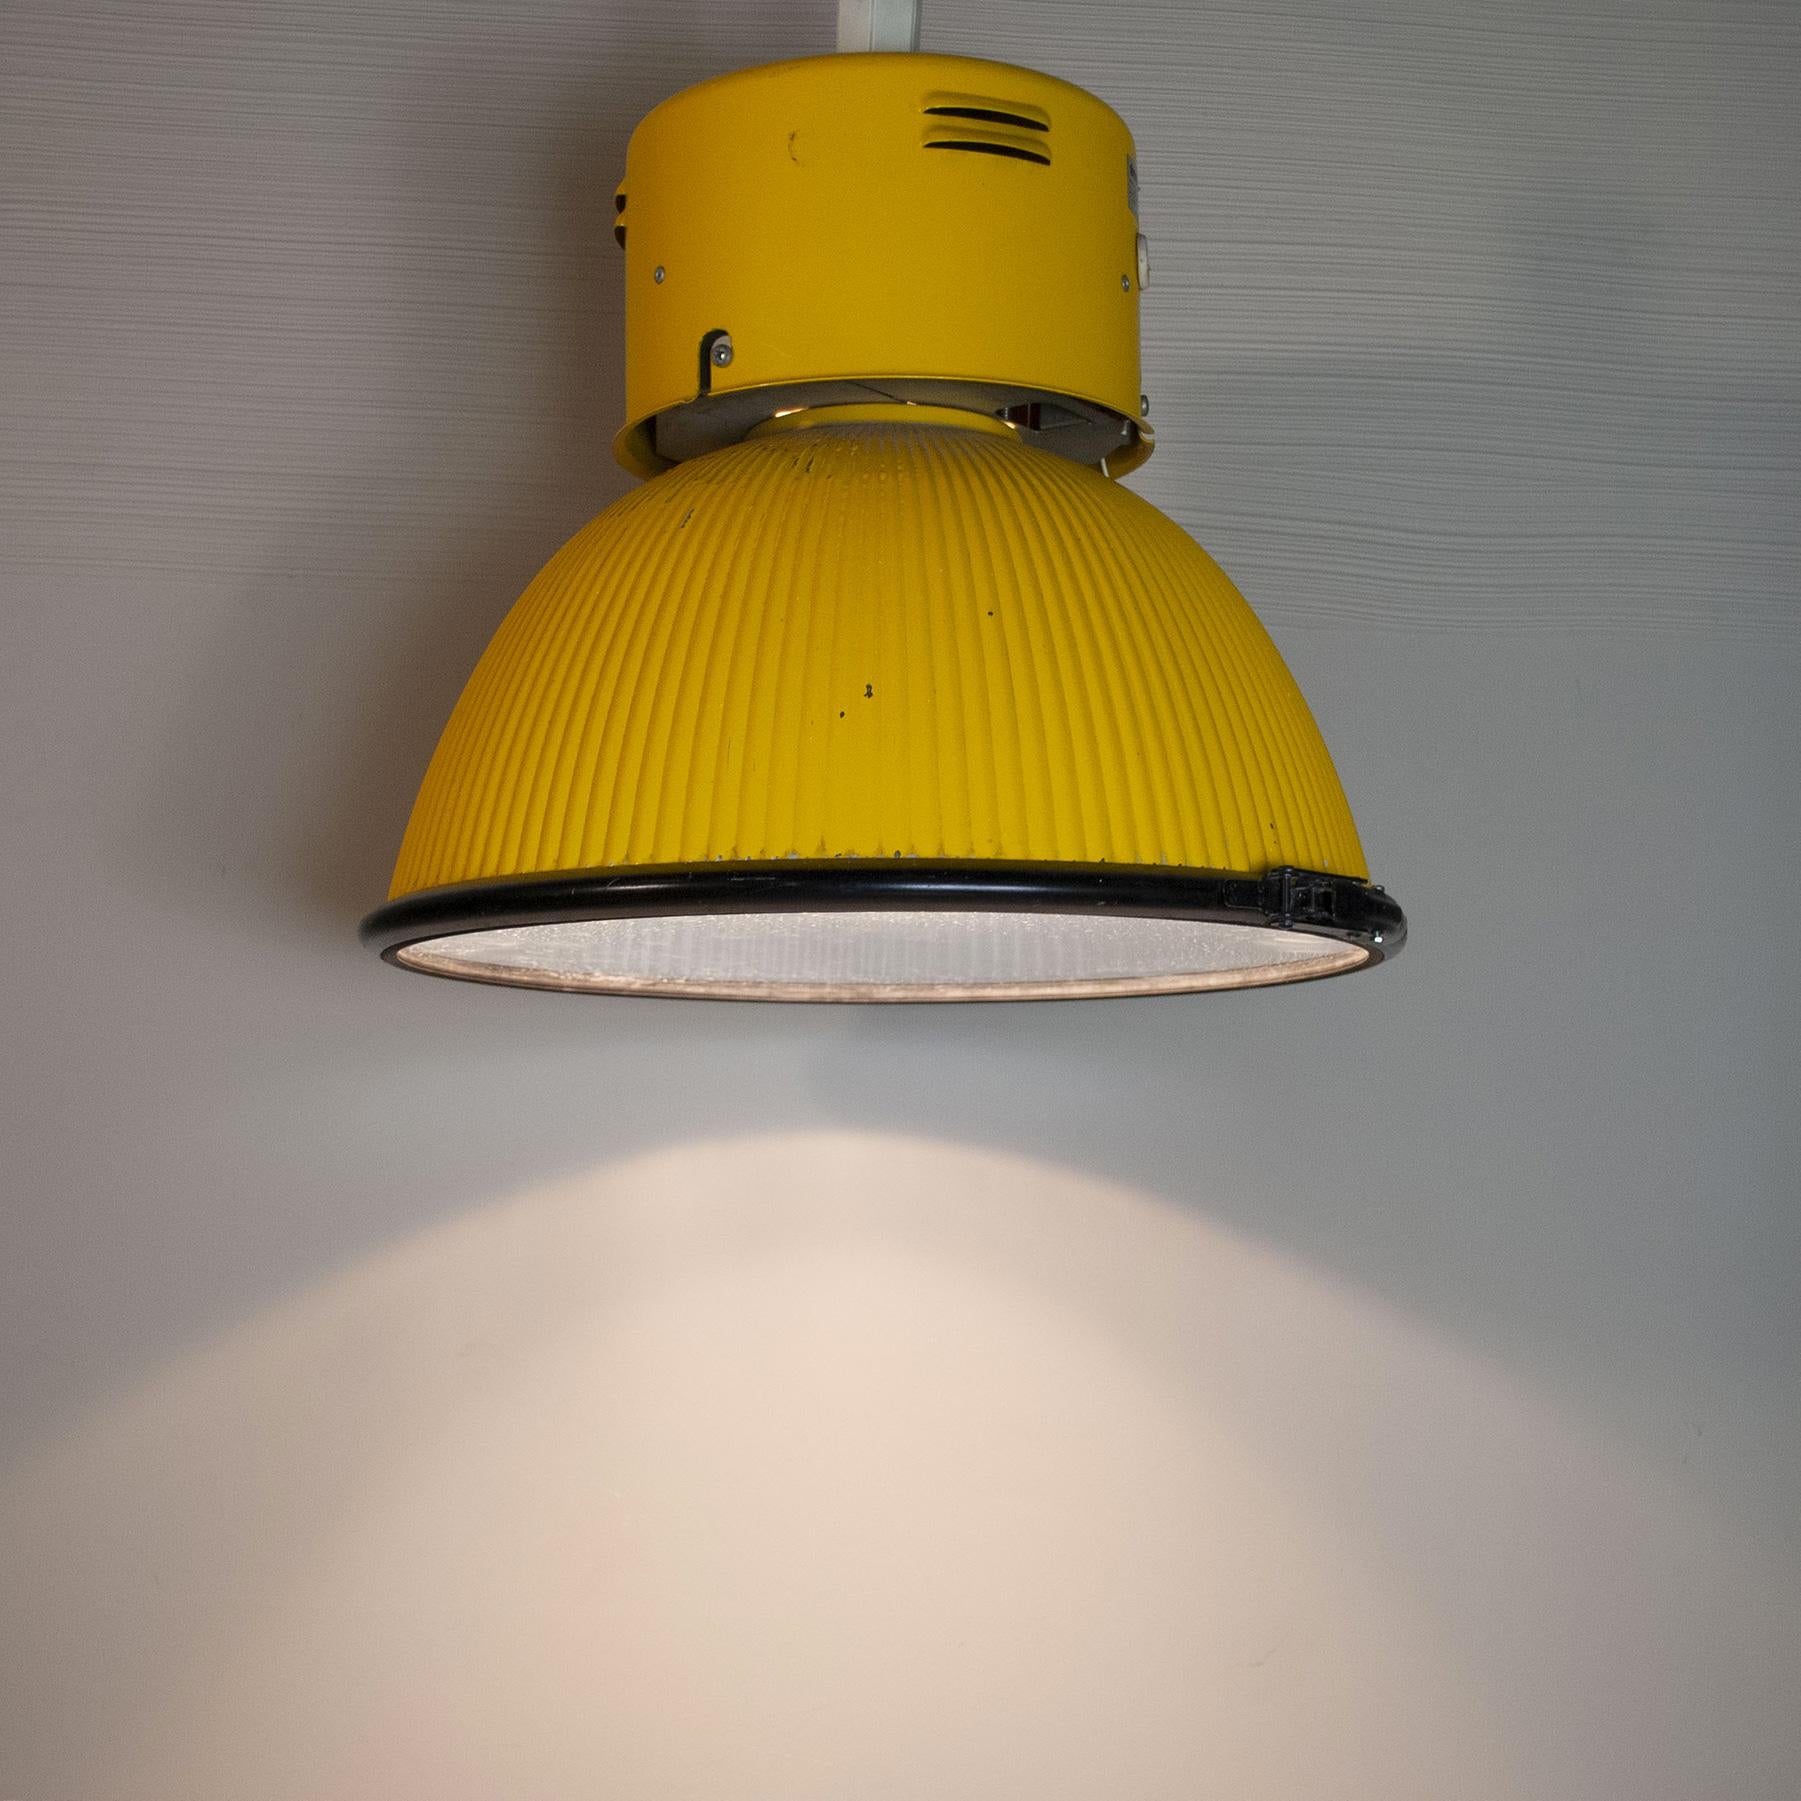 Zwei große Industrielampen aus den 1980er Jahren, Disano-Marke aus gelb lackiertem Aluminium.